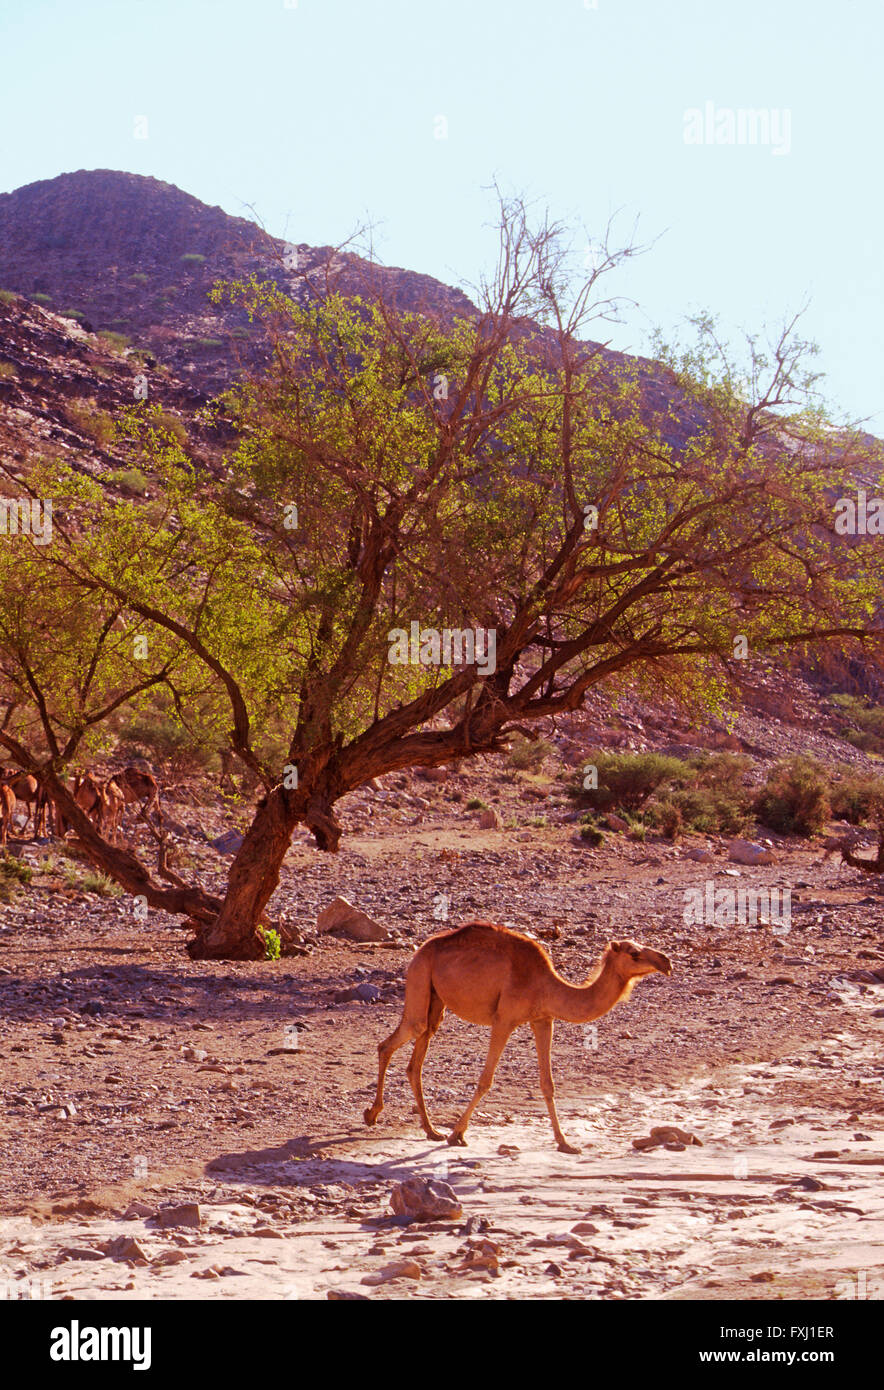 Dromedario camello forrajes para alimento en las colinas cercanas a Bishah, Reino de Arabia Saudita Foto de stock